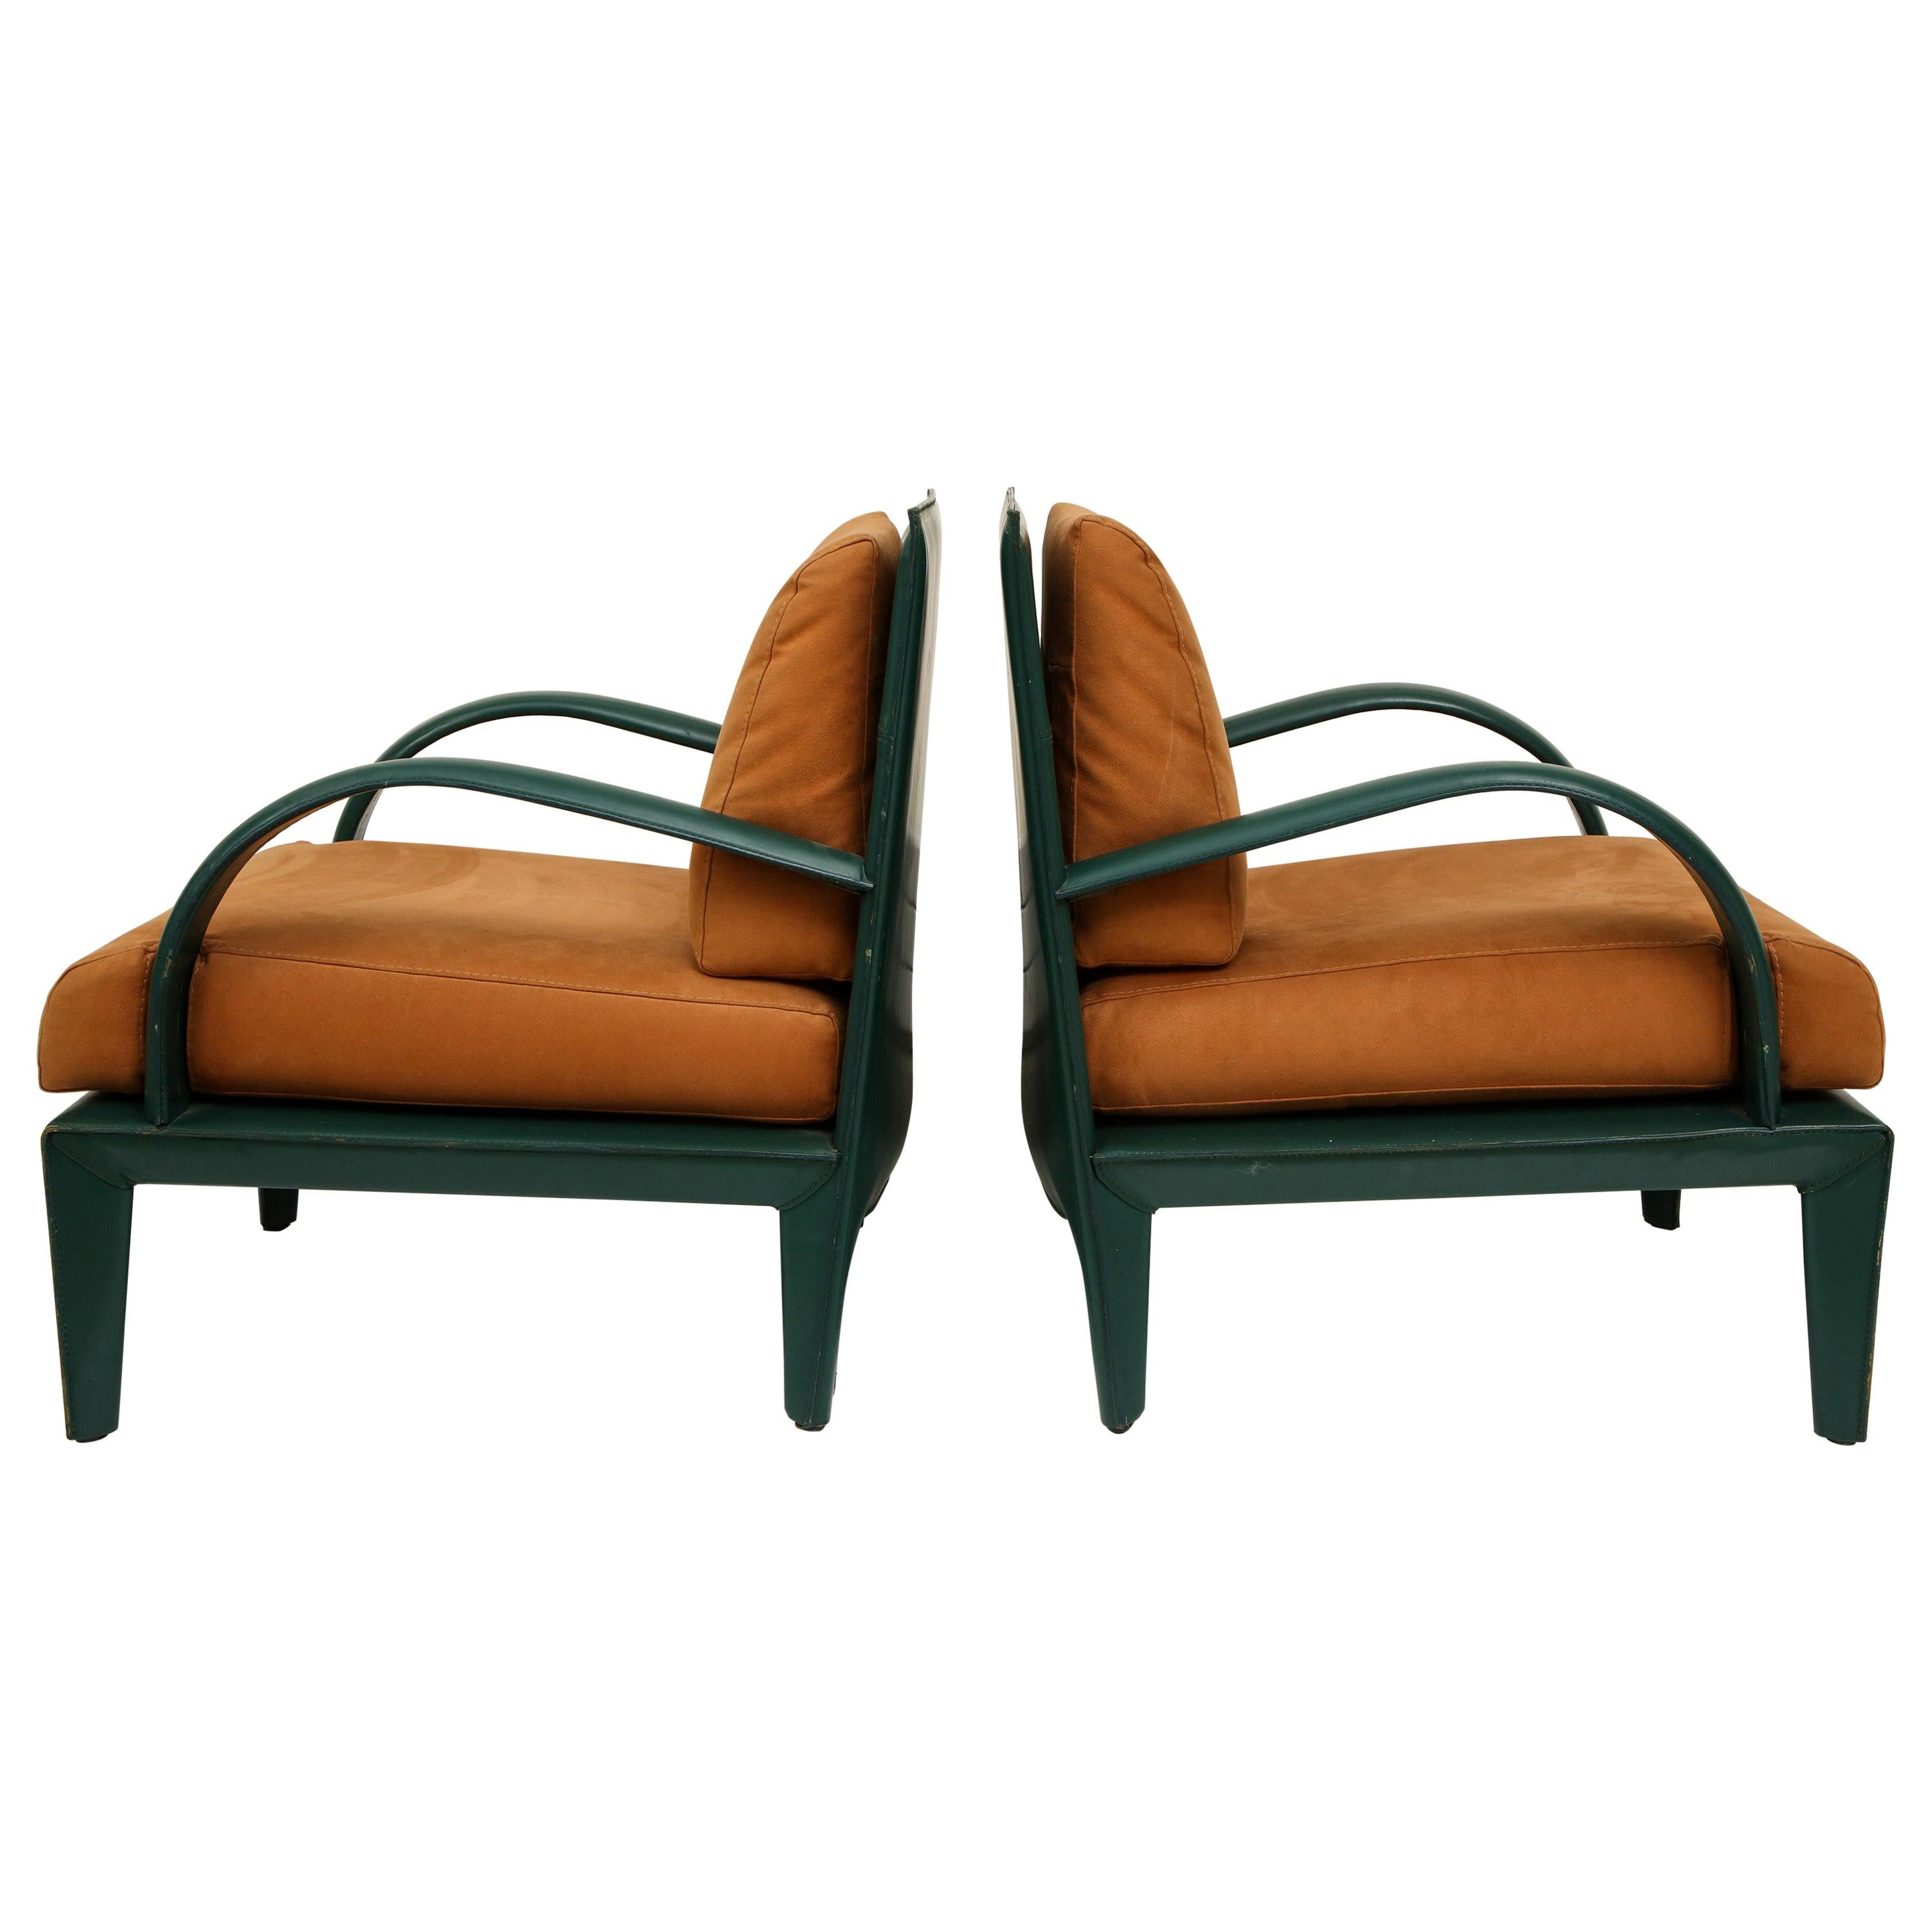 Chaises de salon vintage en cuir brun vert de Roche Bobois, années 1980, France

De belles et lourdes chaises longues des années 1980. Le cuir vert est en très bon état et robuste. Le daim marron est un contraste parfait. Très